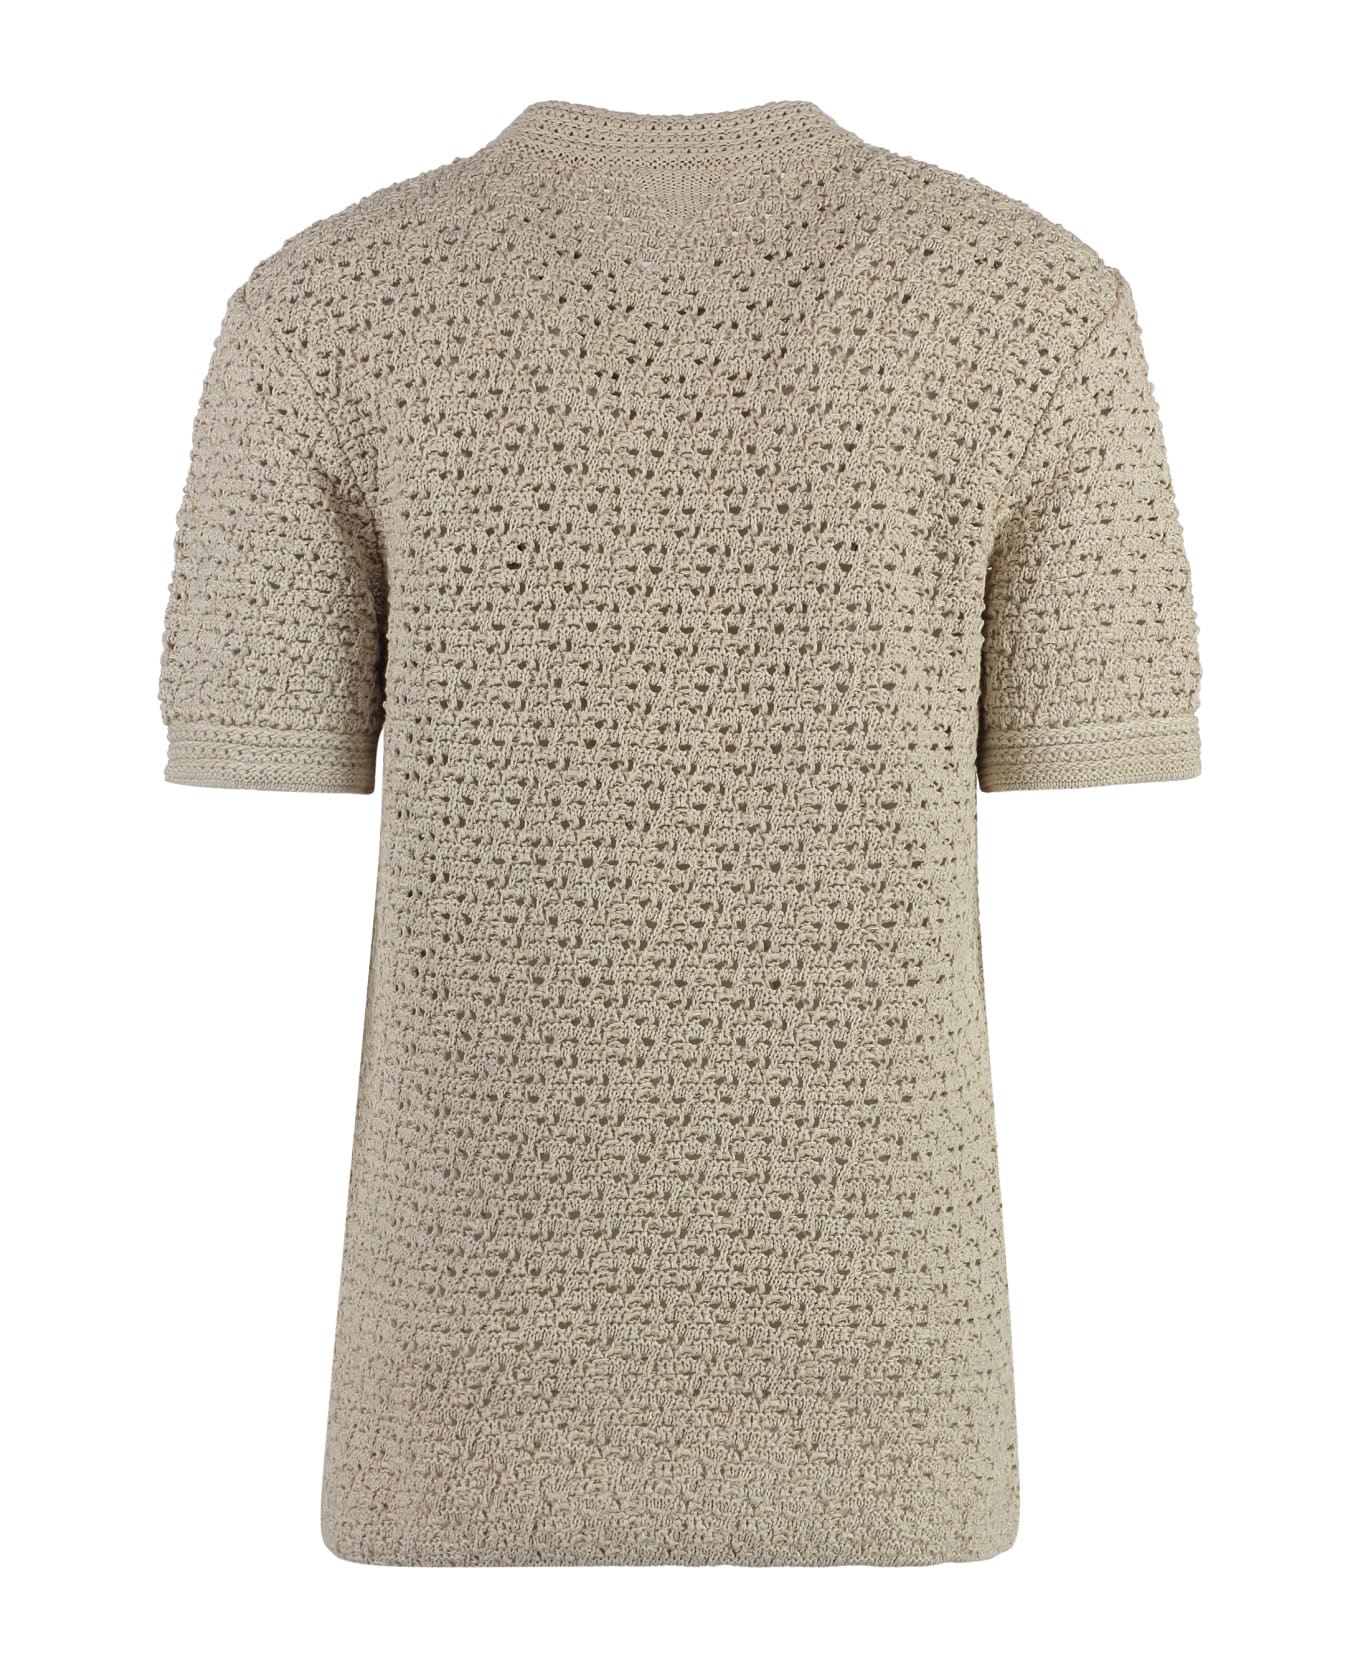 Bottega Veneta Knitted T-shirt - Beige Tシャツ